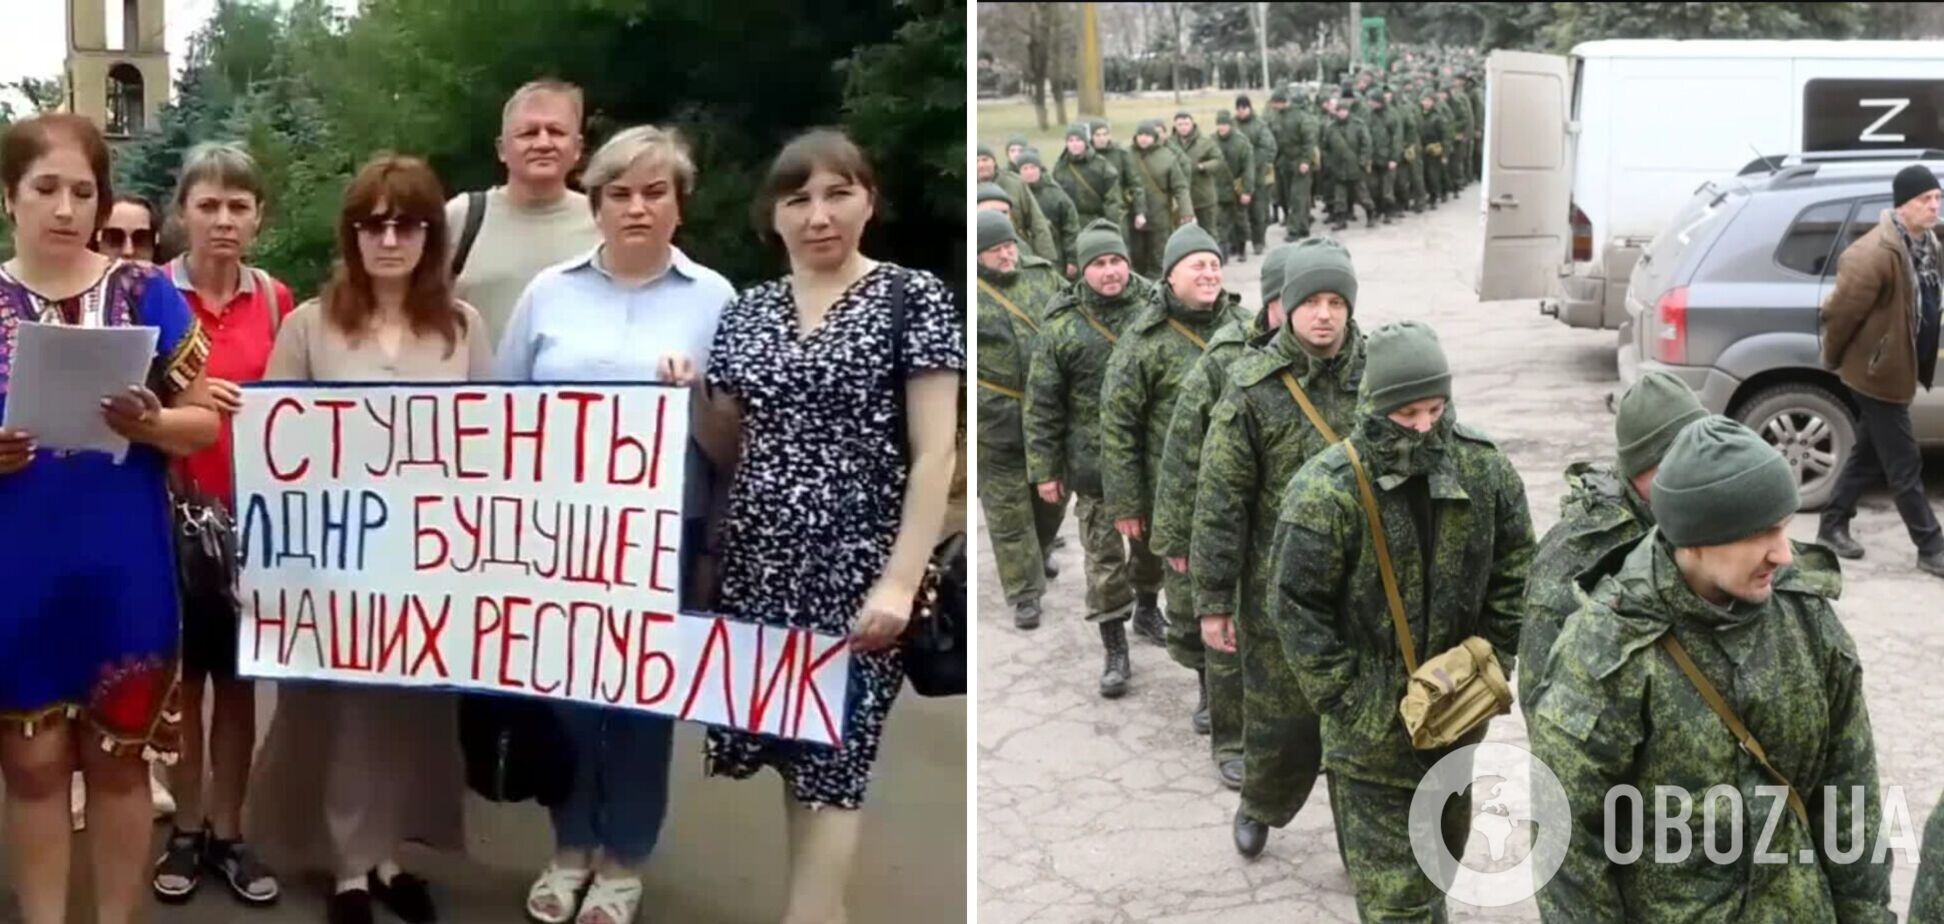 'Верните детей за парты': матери 'мобиков' с оккупированного Донбасса записали обращение к Путину с жалобами, что тех бросили на передовую. Видео